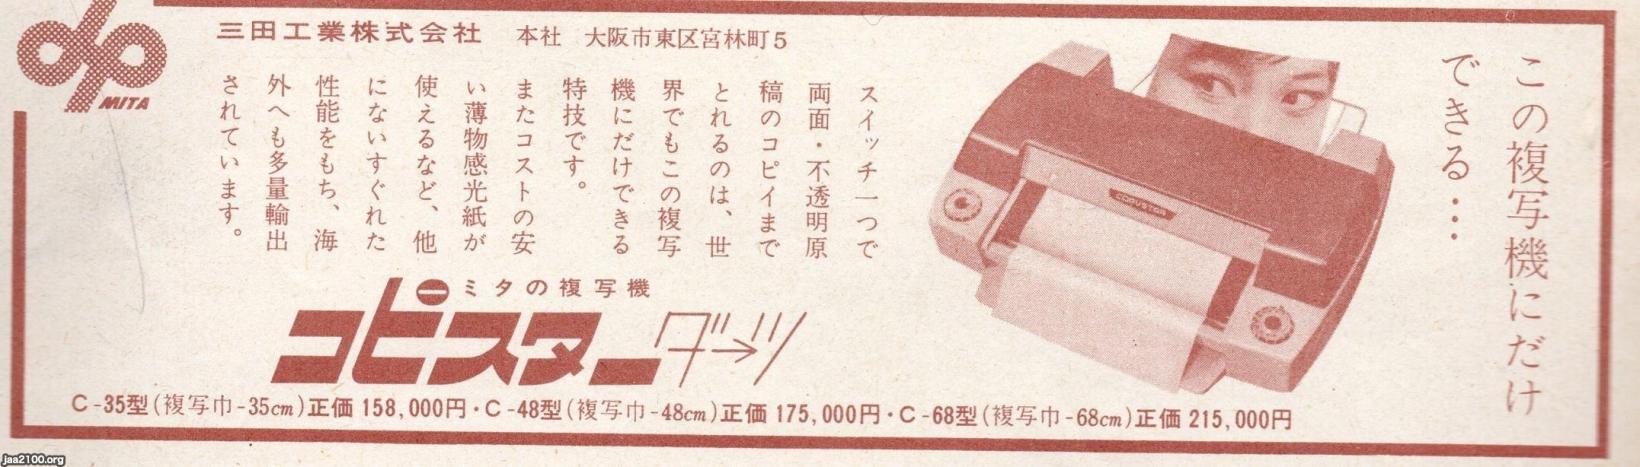 コピー機 昭和36年 コピスターダーツ 三田工業 ジャパンアーカイブズ Japan Archives